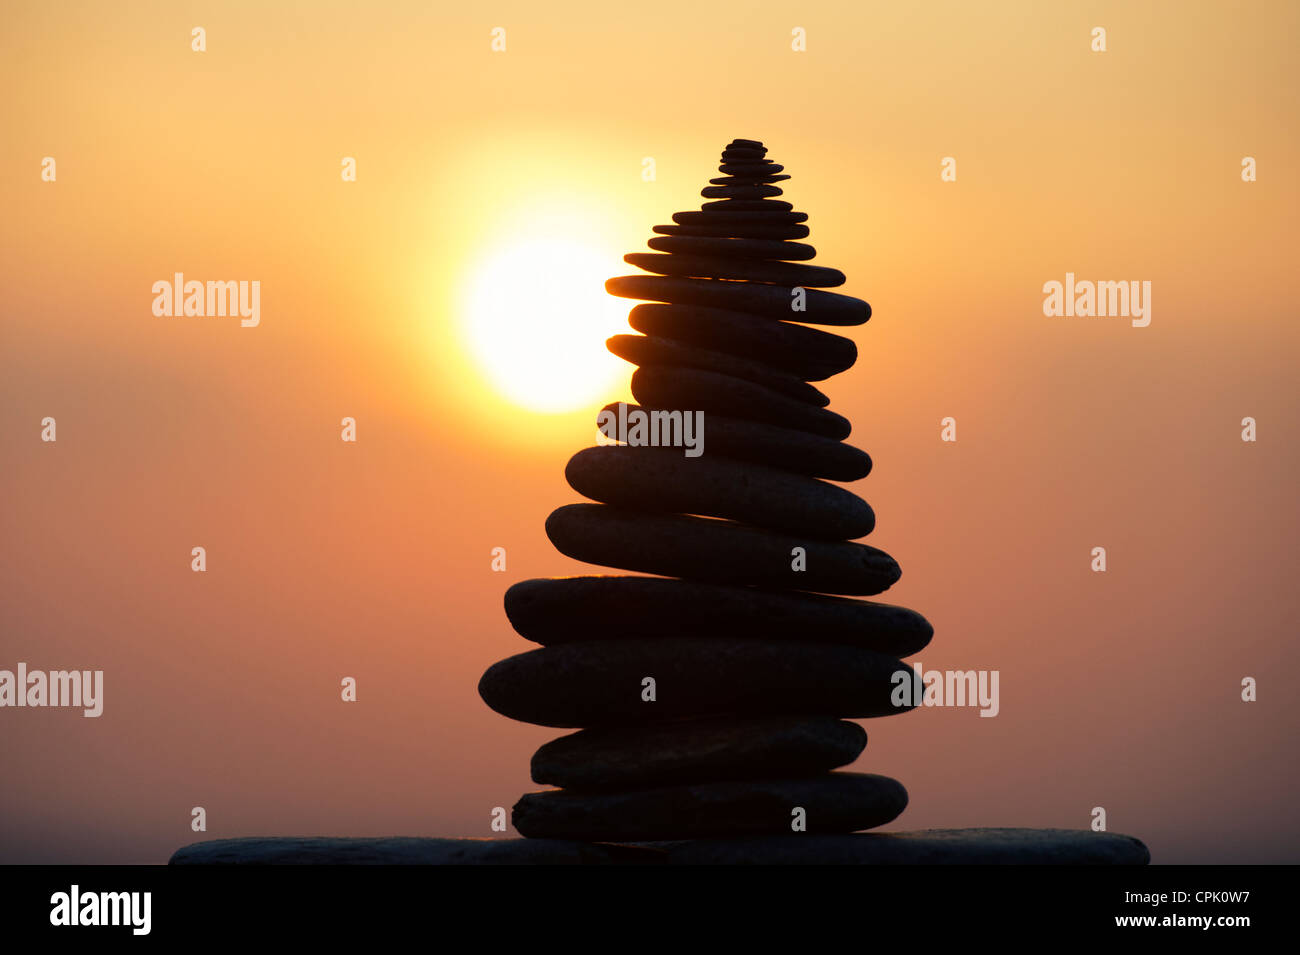 Galets empilés contre une silhouette au coucher du soleil. UK Banque D'Images